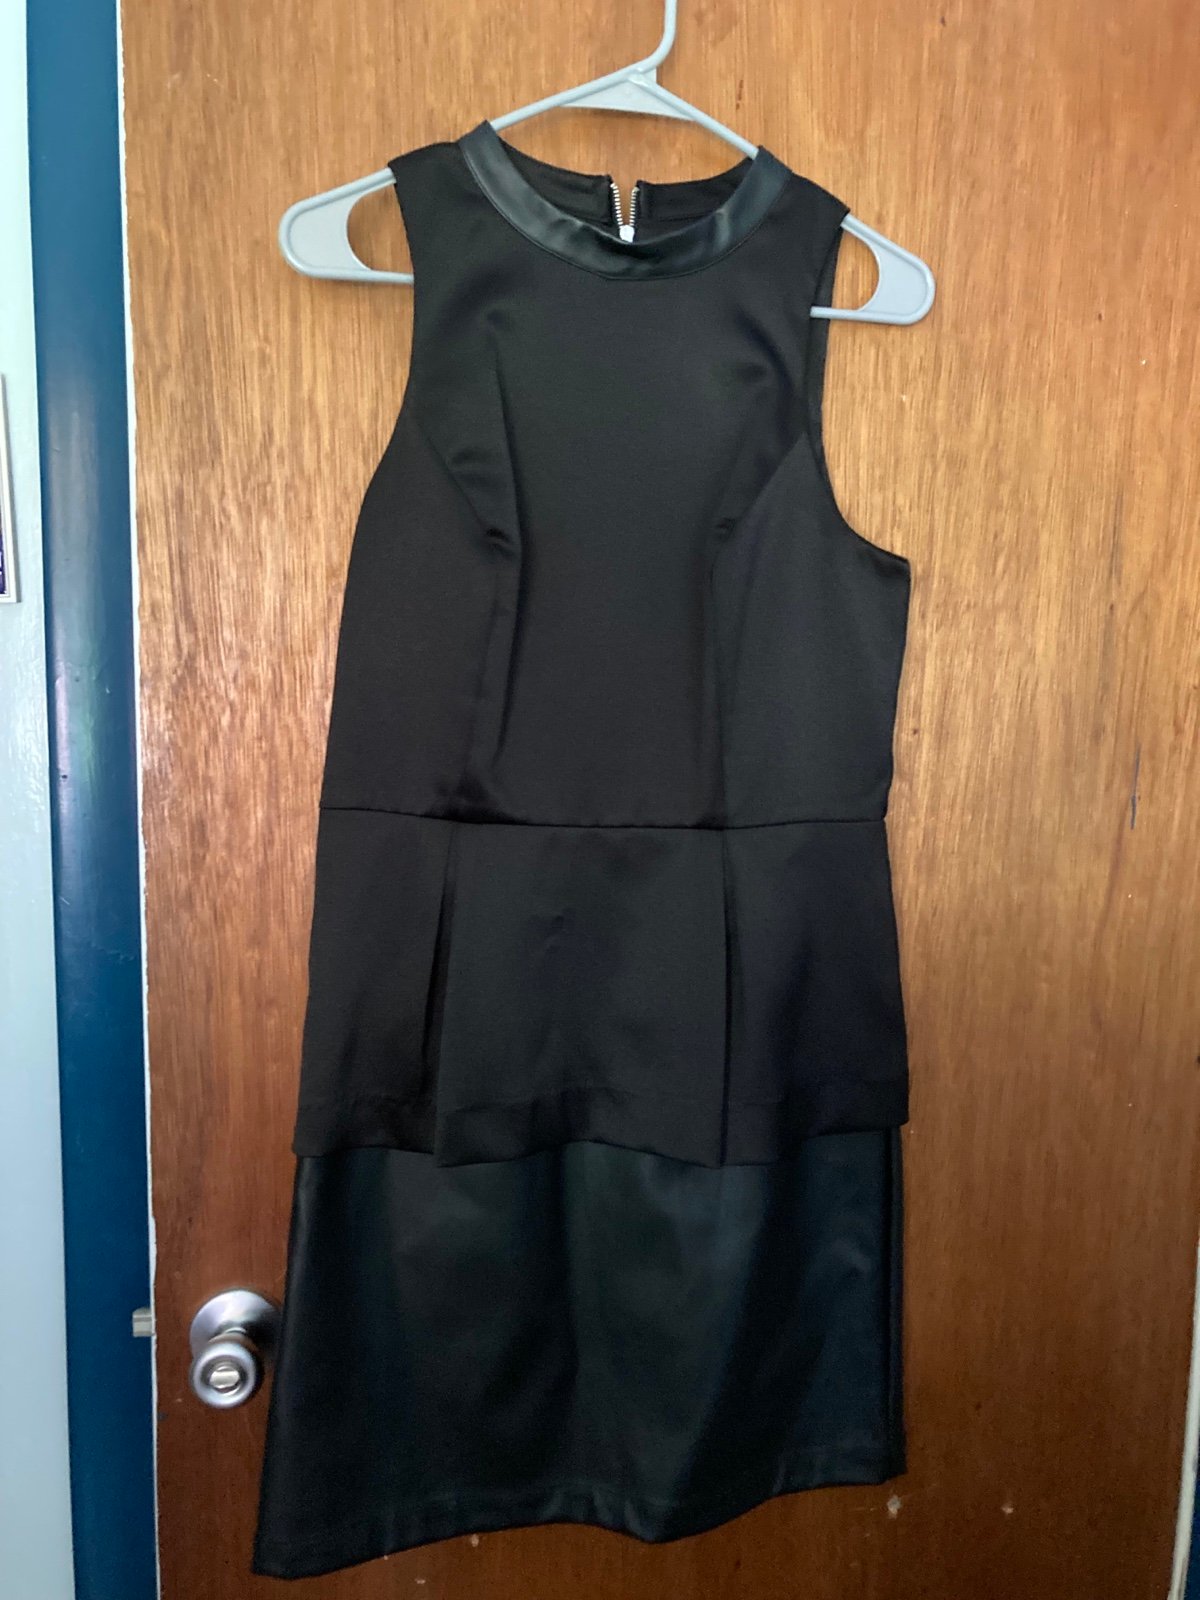 Authentic Nice black Kensie dress- size 6 NQjOoBjmx US 